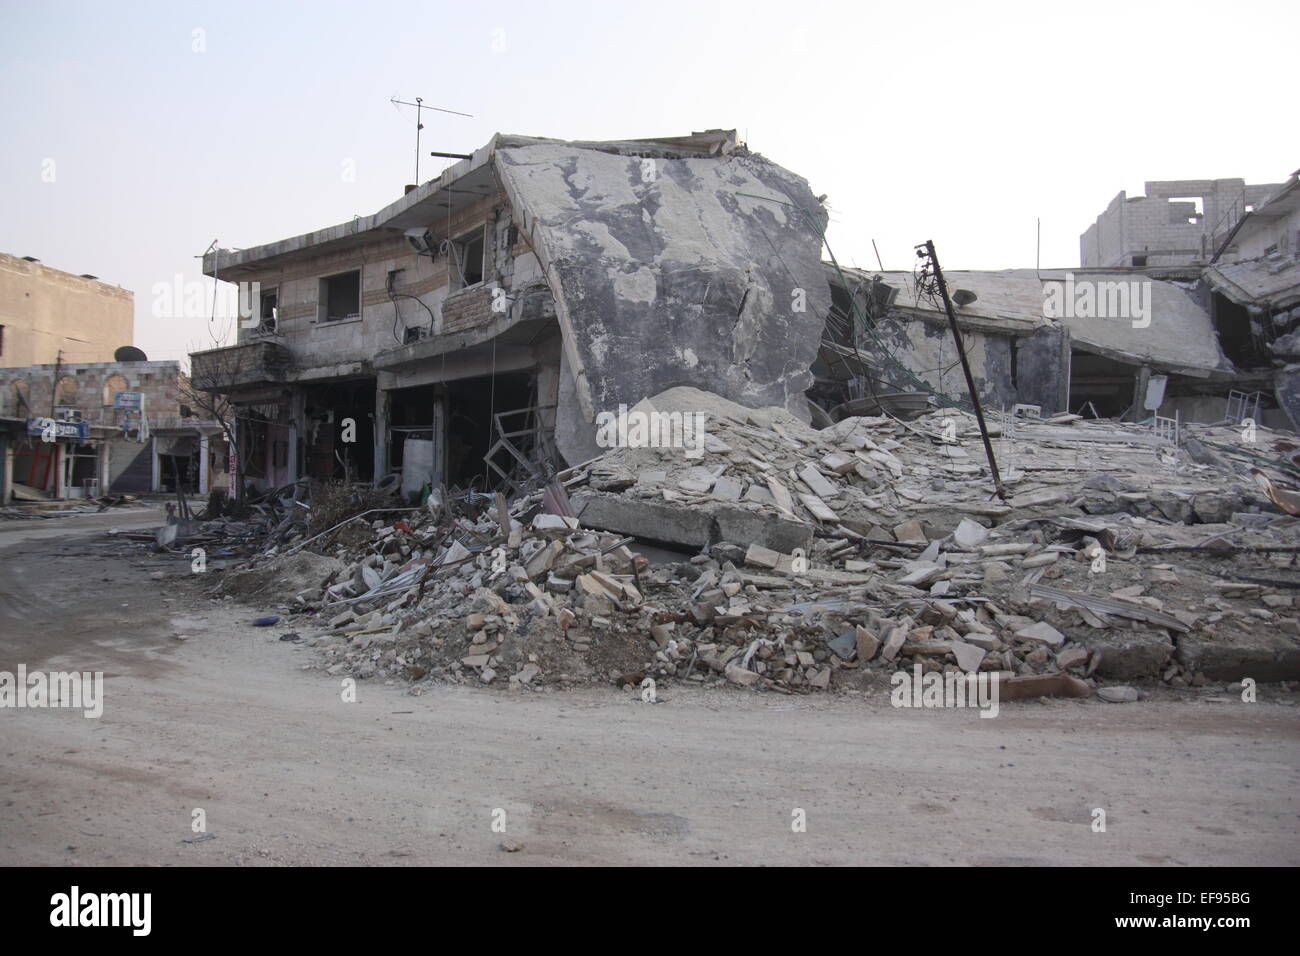 Zerstörte Häuser und Geröll dominieren die einsamen Straßen in der Stadt Kobane, Syrien, 28. Januar 2015. Kurdische Kämpfer haben es geschafft, die Kräfte des sogenannten IS, islamischen Staat aus der Stadt Kobane zurückzudrängen.  Raketen und Kampfhandlungen, jedoch haben viele Zivilisten getötet und Kobane völlig am Boden zerstört. Foto: Jan Kuhlmann/dpa Stockfoto